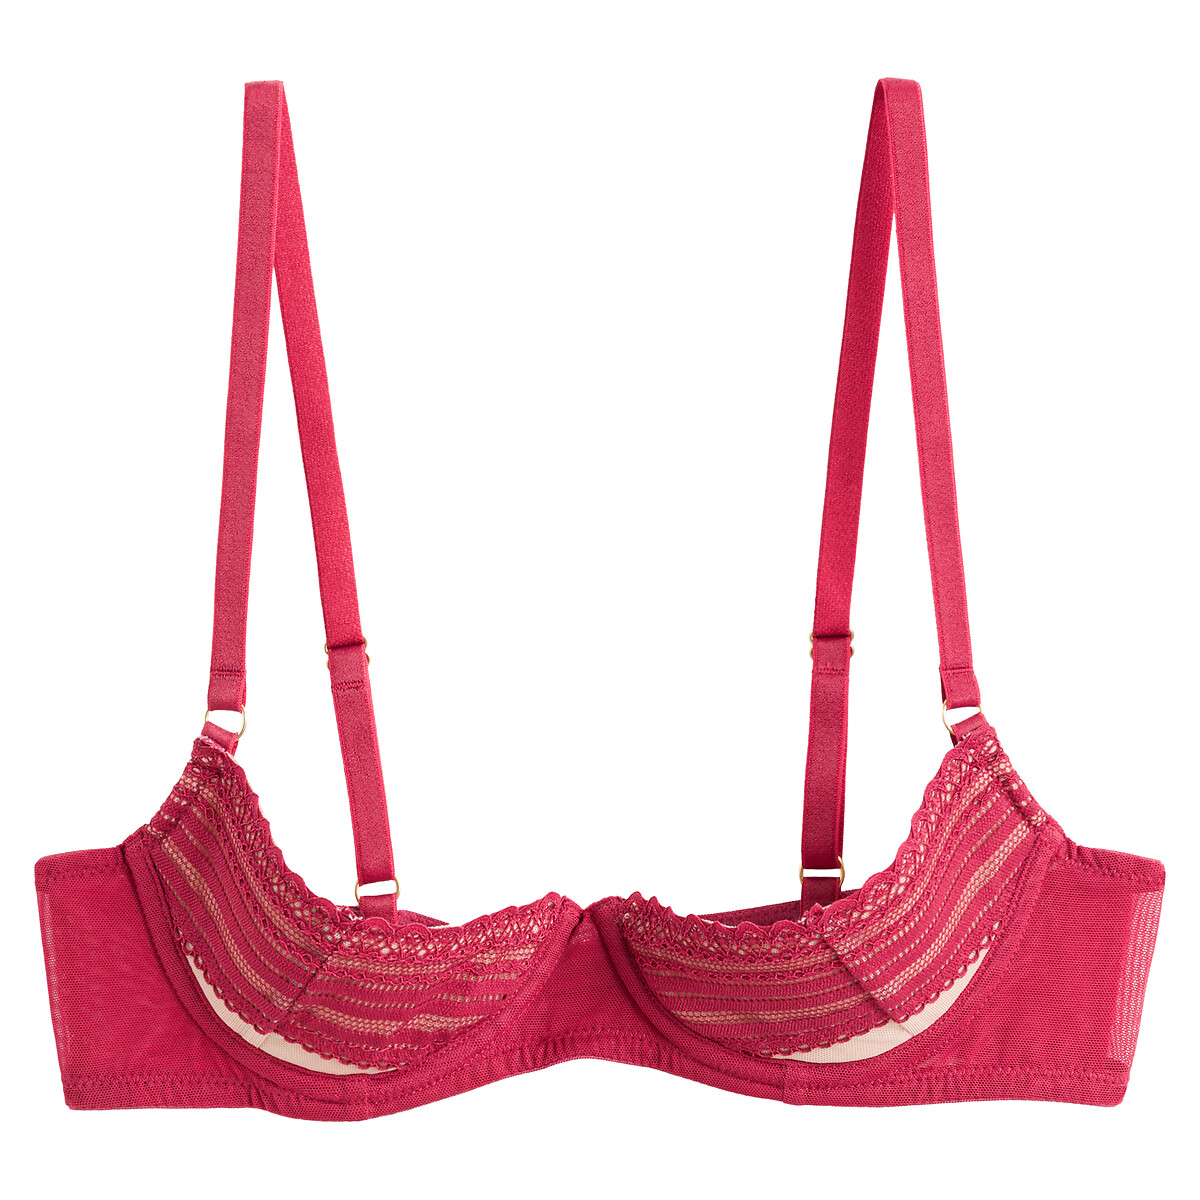 Plus Size Peek a Boo 2 piece Lace lingerie set - Red